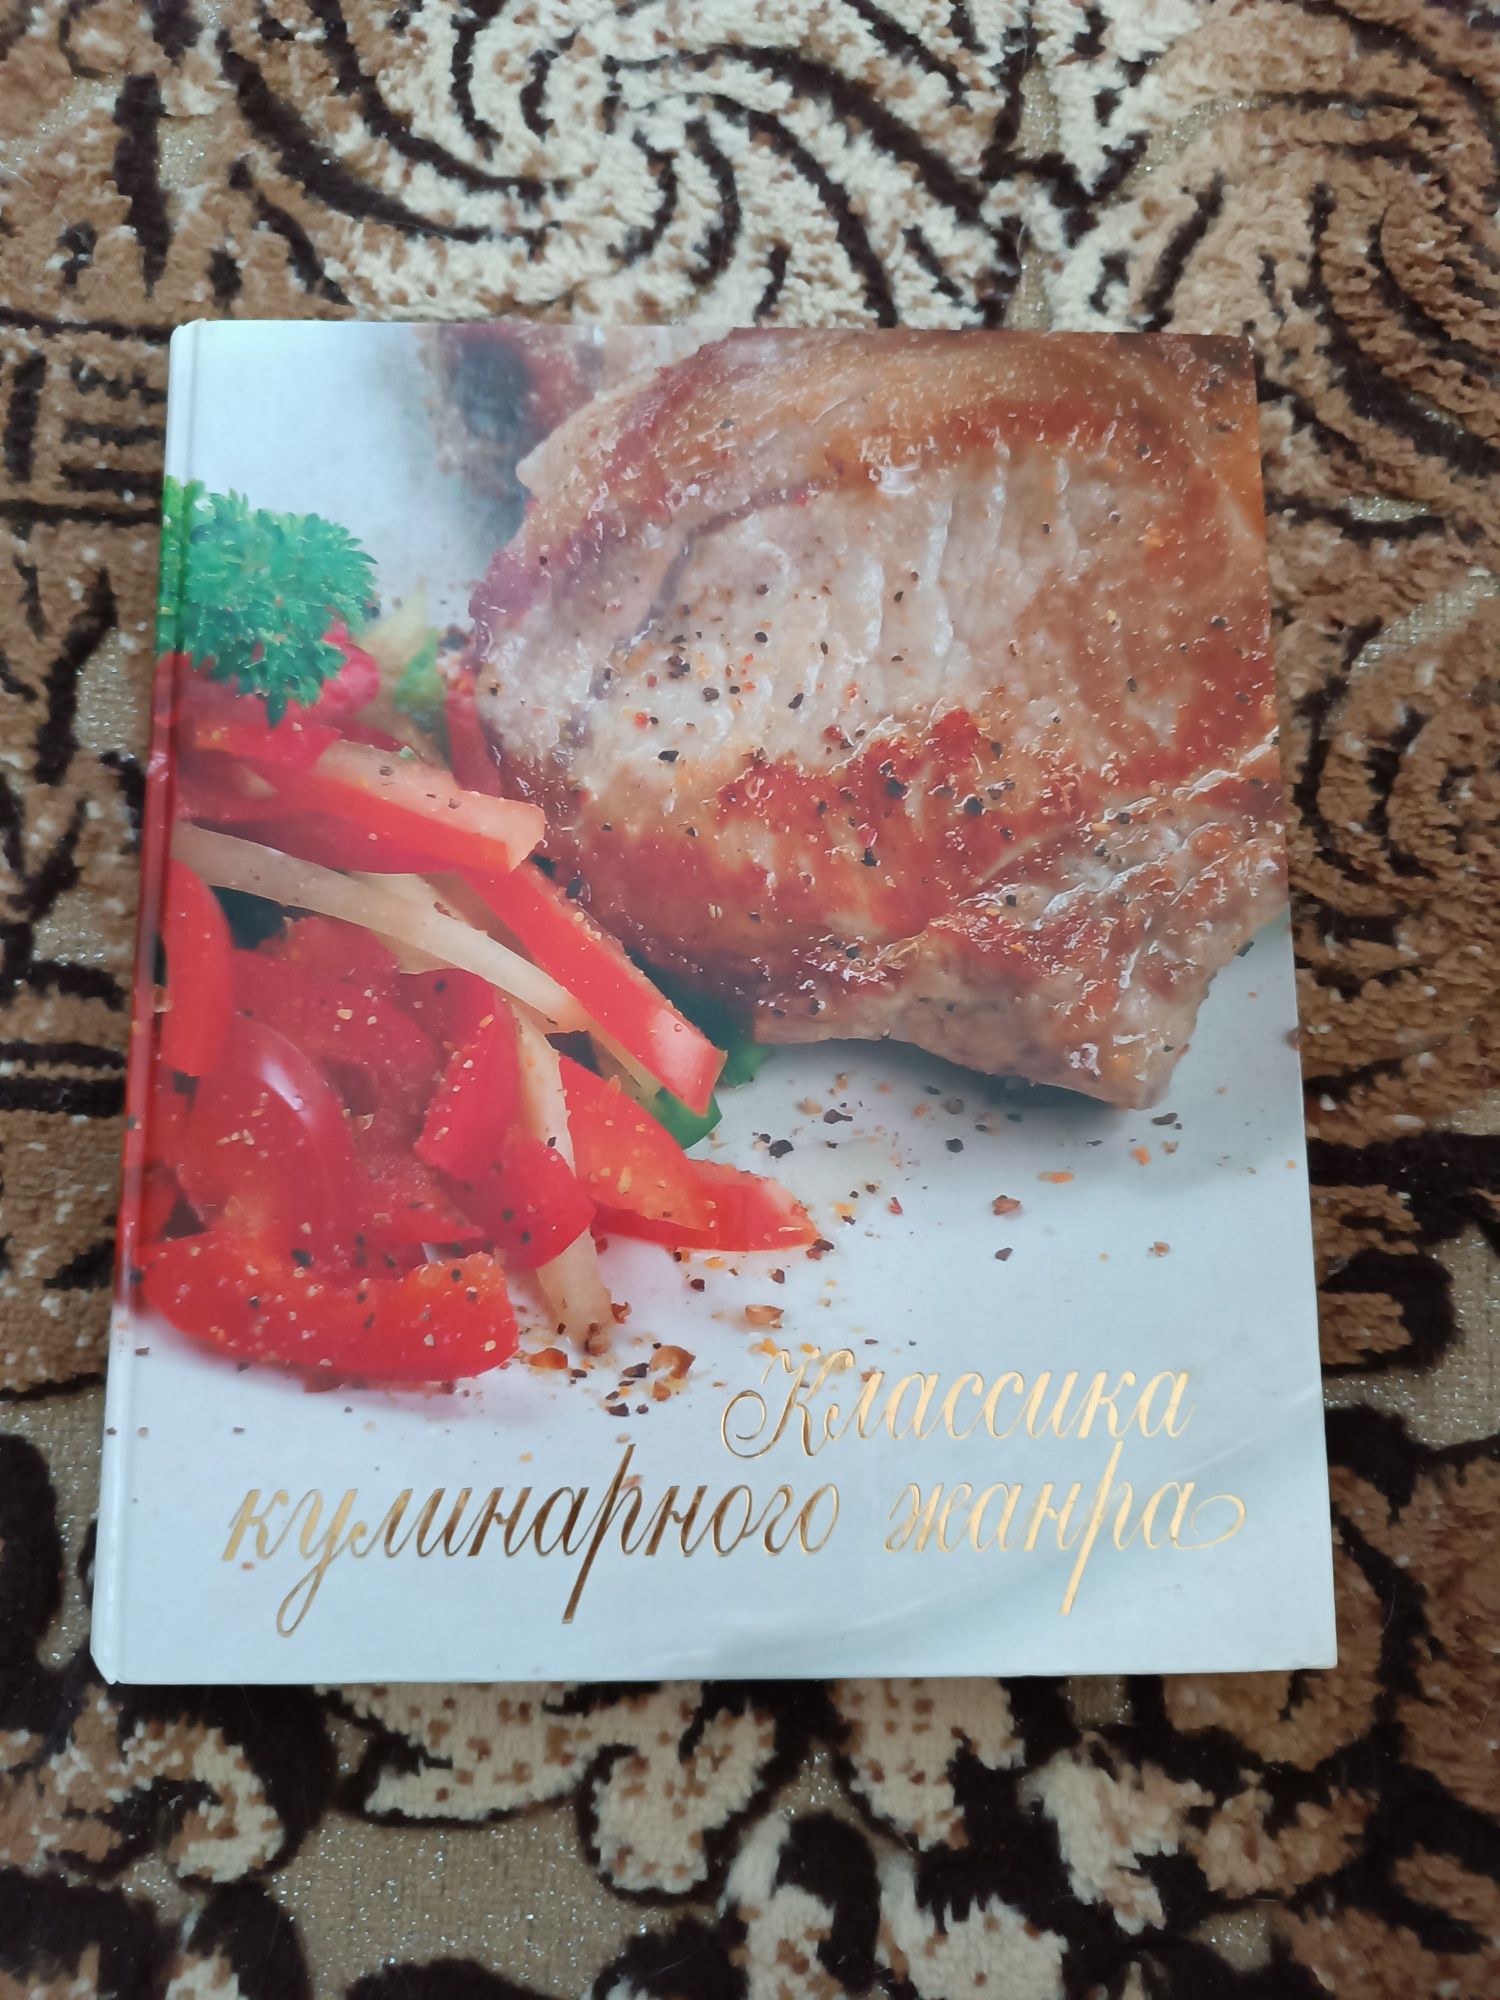 Продам кулинарные книги